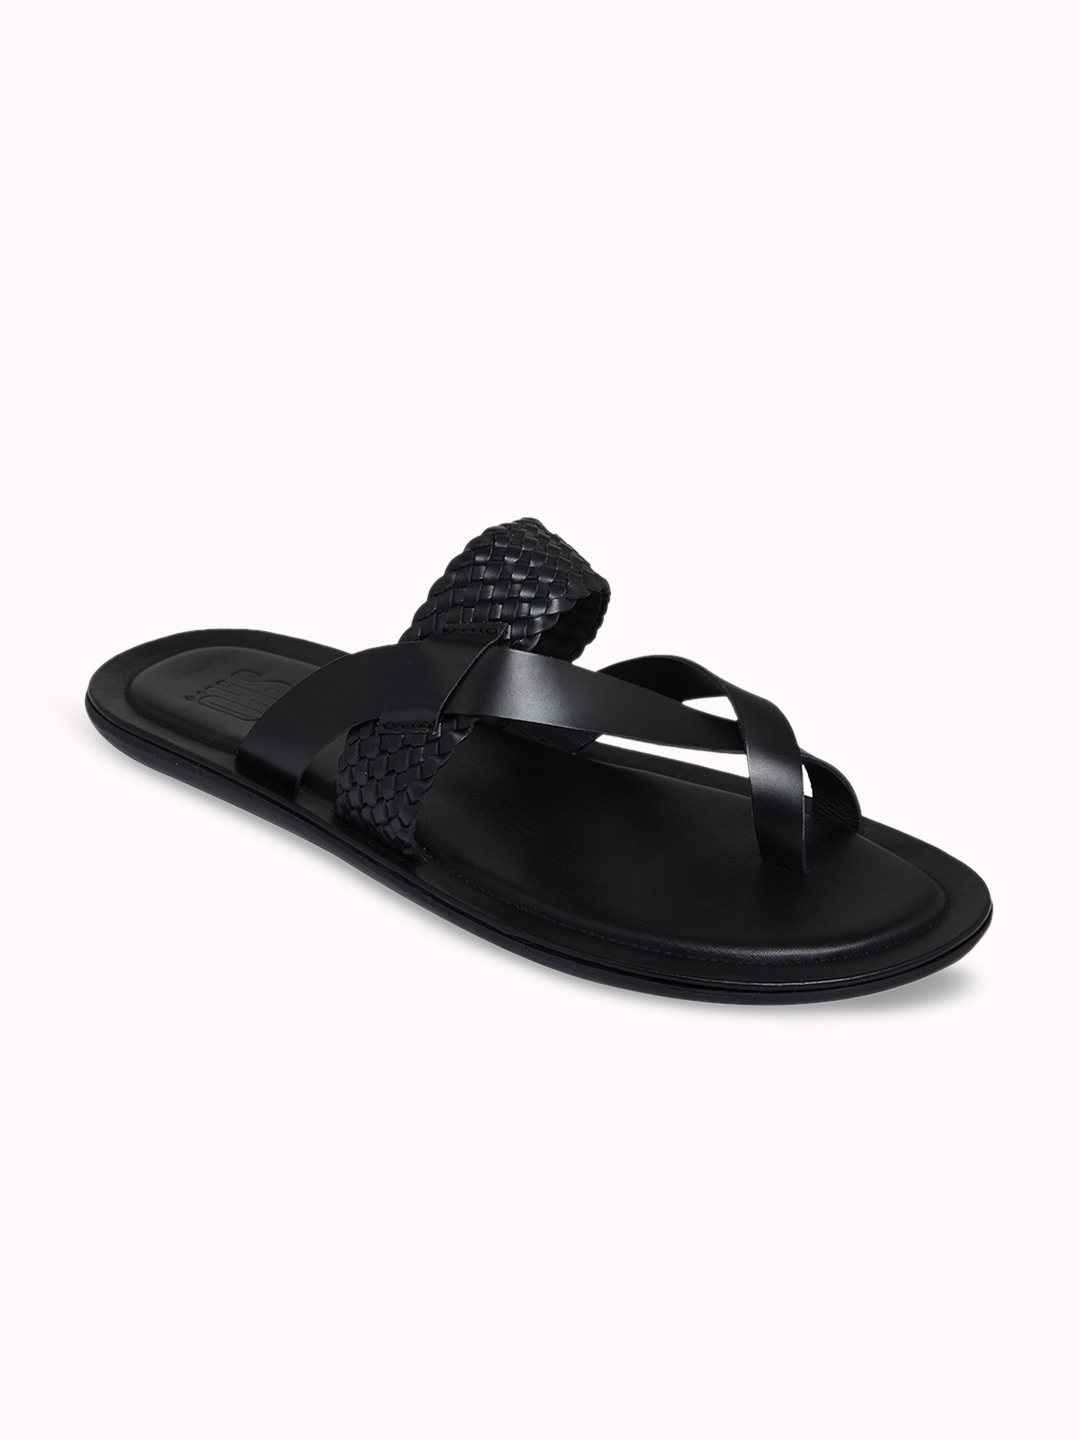 Buy SKO Men Black Comfort Leather Sandals - Sandals for Men 7464700 ...